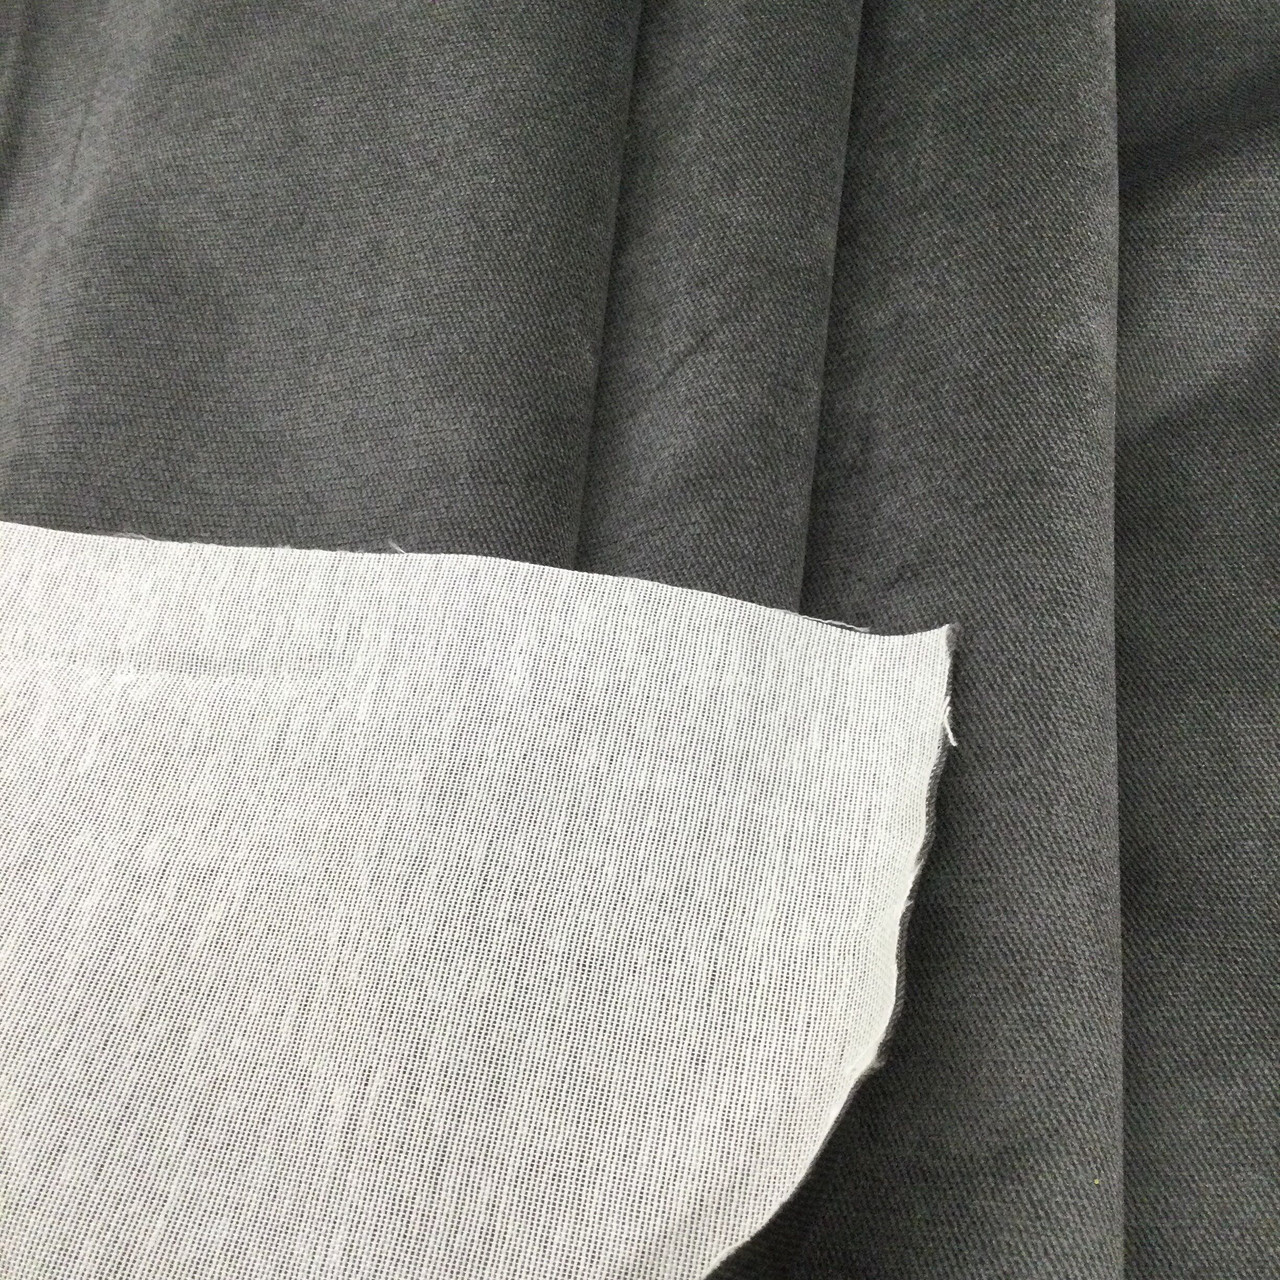 Black fabric by the yard, dark grey fabric by the yard, black marble  fabric, dark grey marble fabric, dark gray fabric, charcoal gray #20124